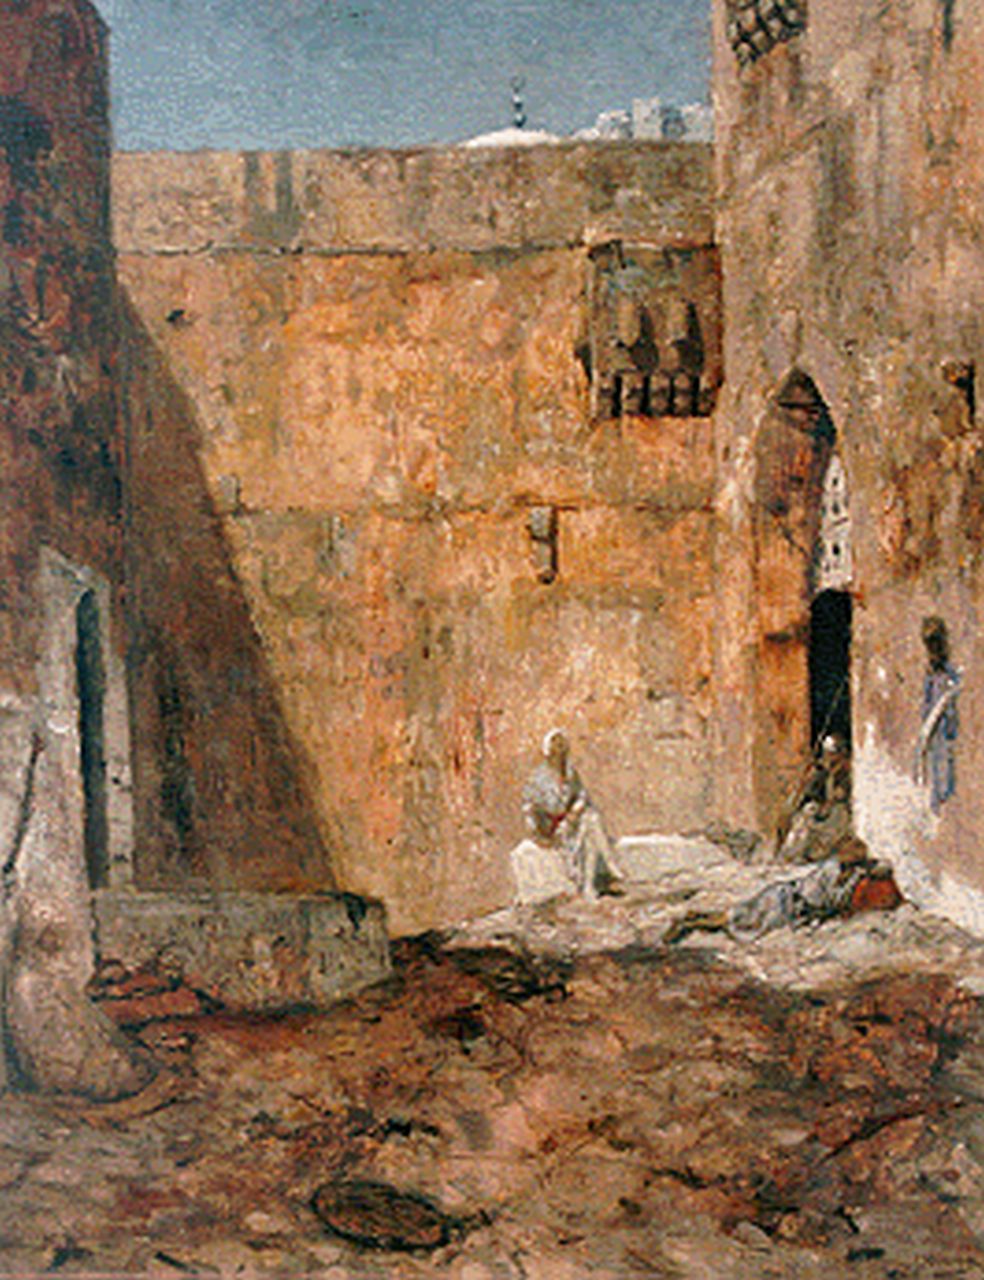 Bauer M.A.J.  | 'Marius' Alexander Jacques Bauer, Wachters op een Oosterse binnenplaats, olieverf op doek 75,0 x 60,0 cm, gesigneerd rechtsonder